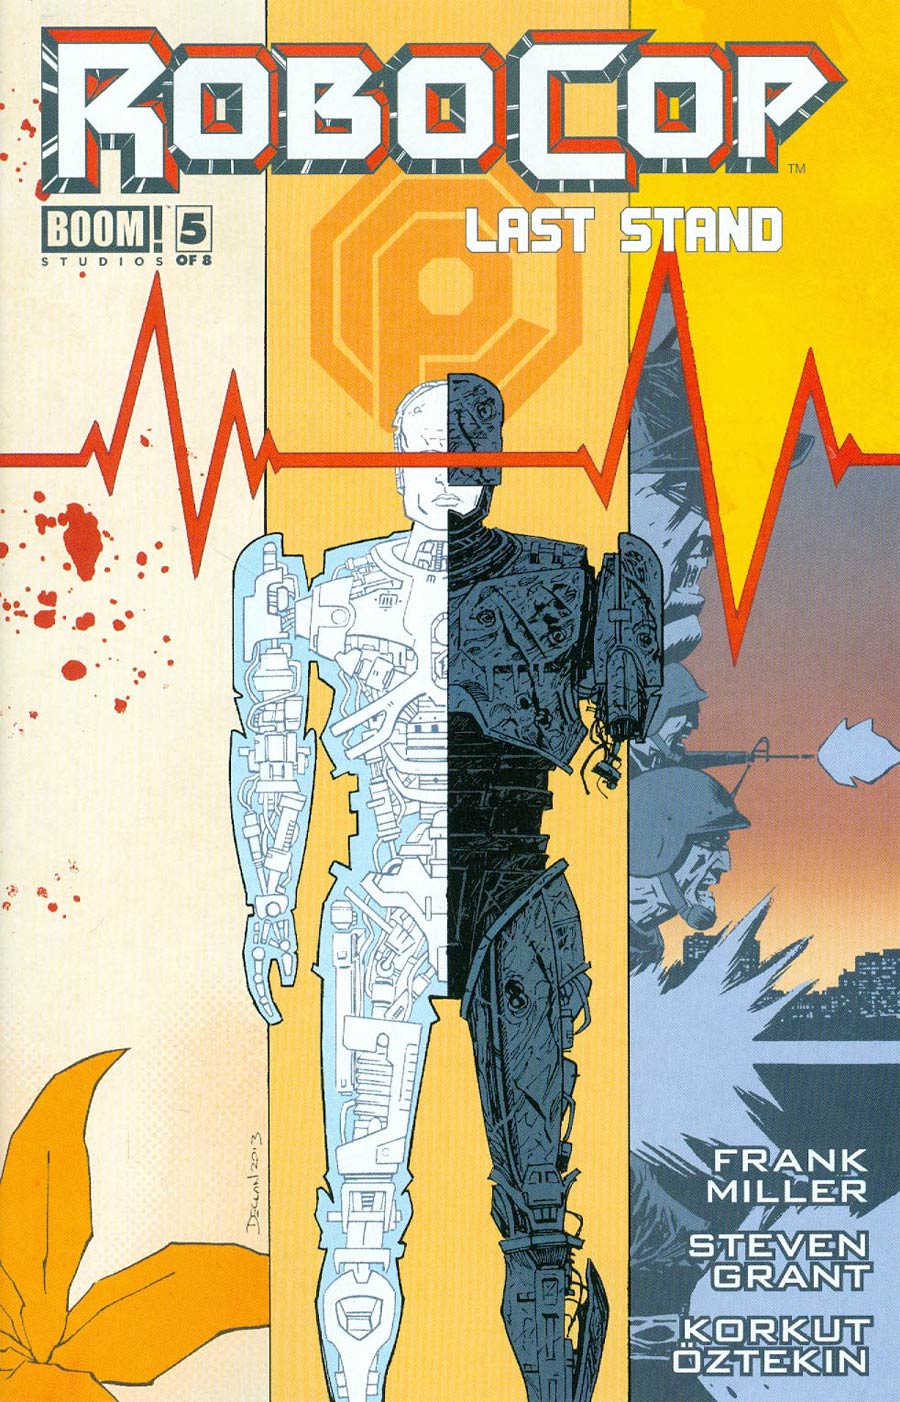 Robocop (Frank Miller) Last Stand #5